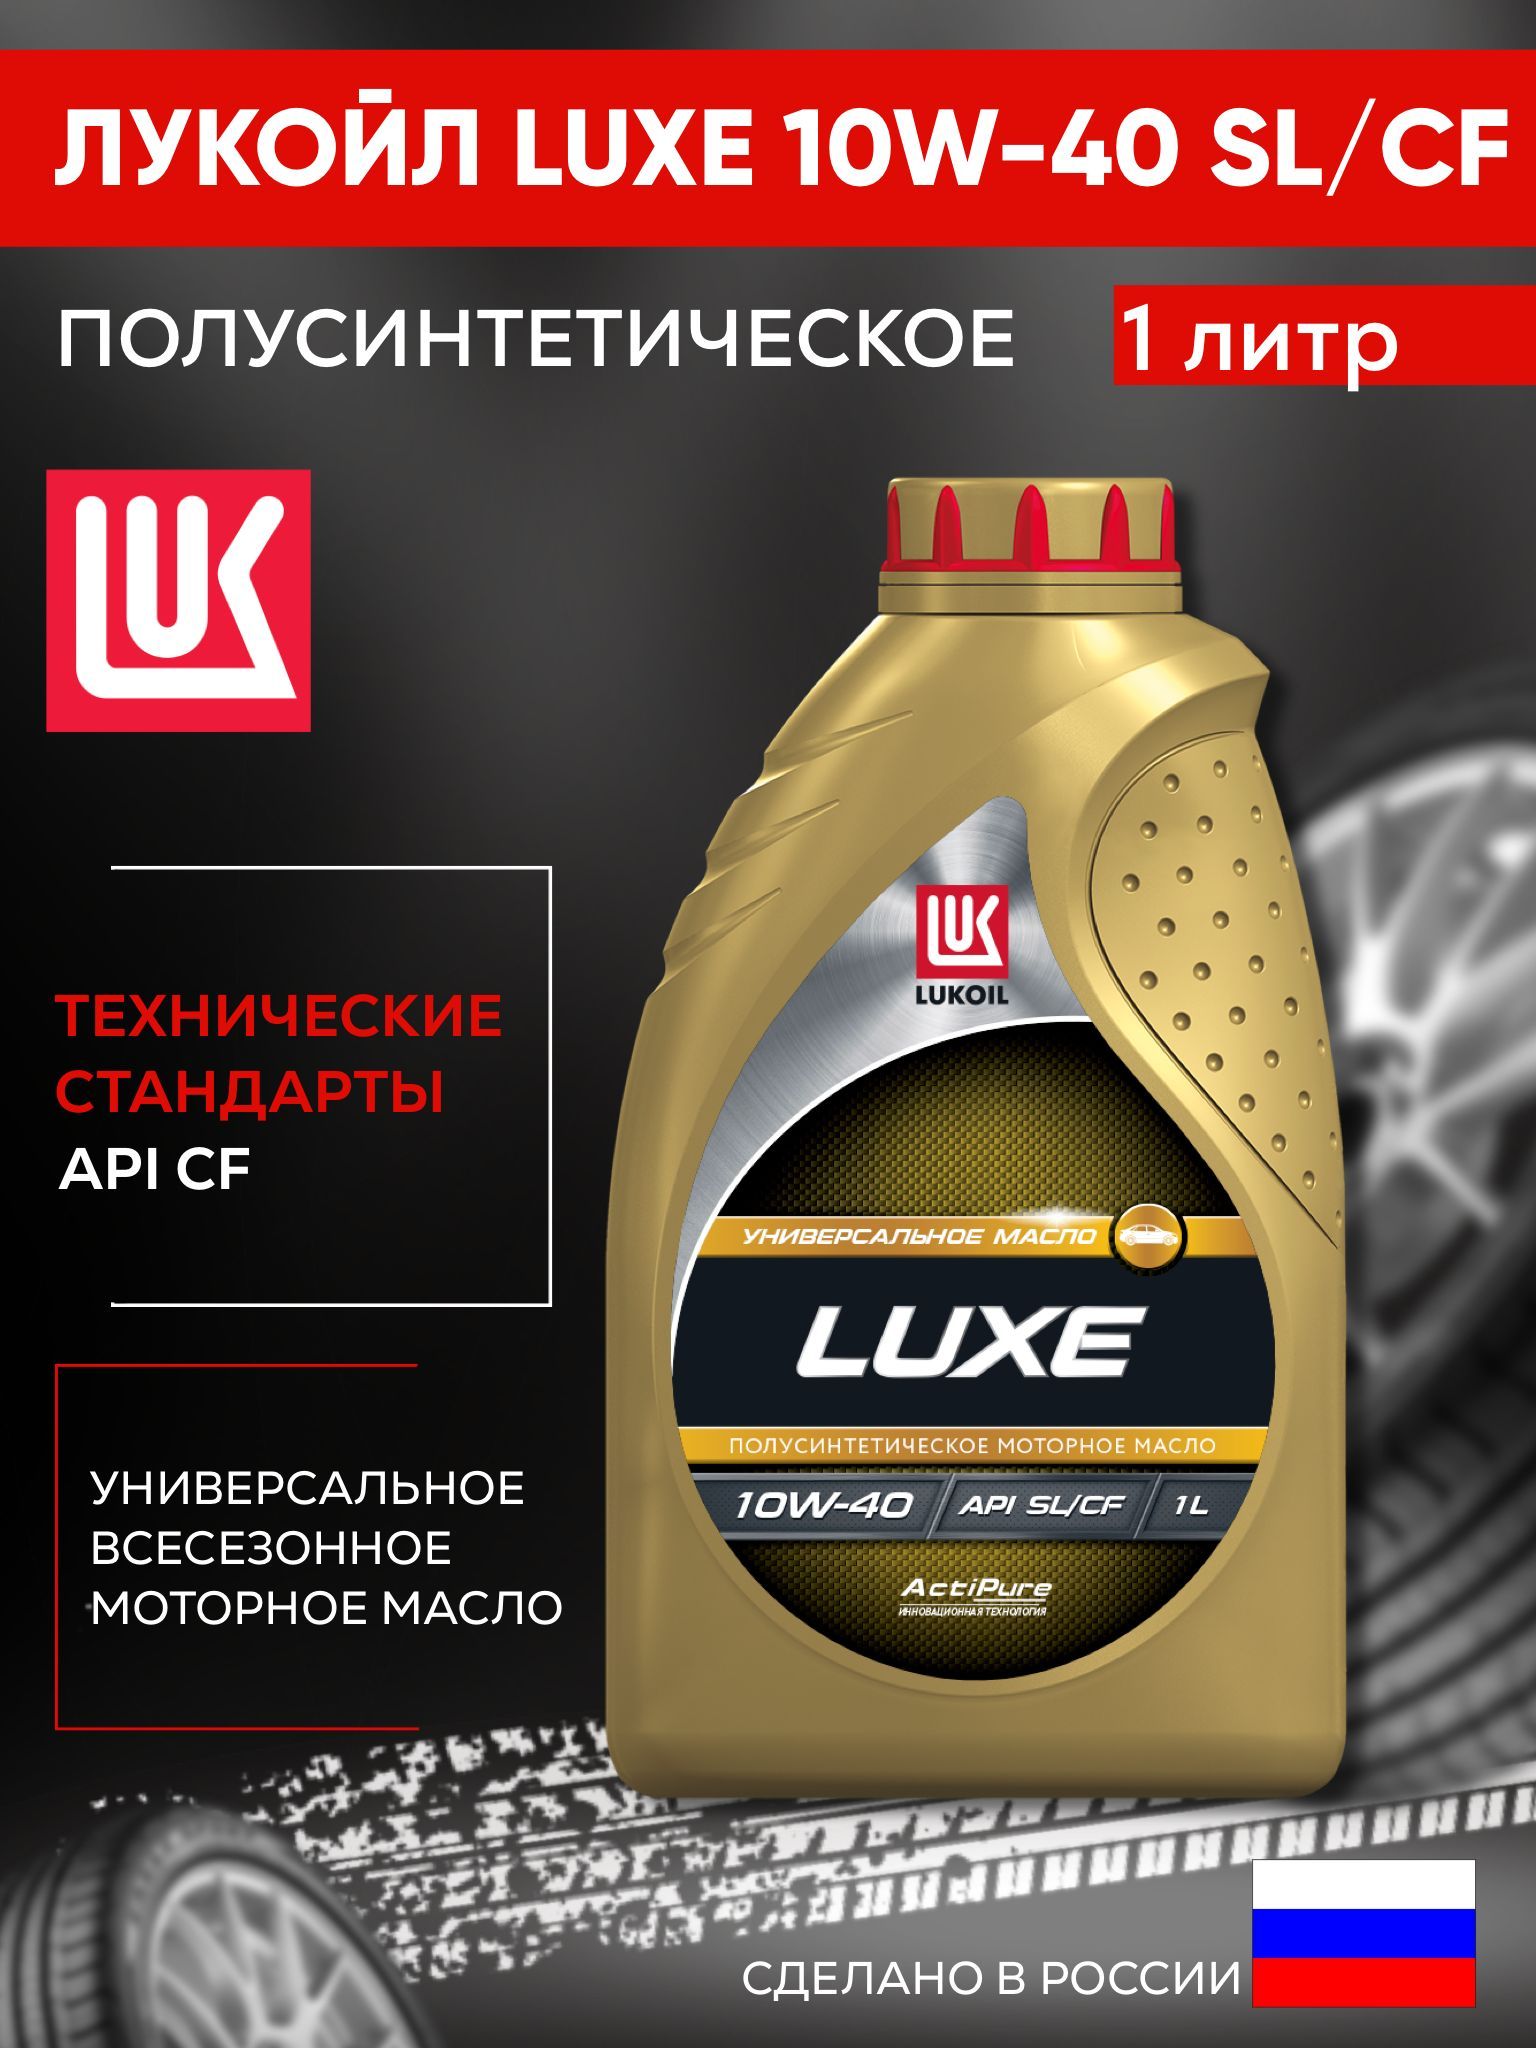 Лукойл люкс 10w 40 полусинтетика отзывы. Lukoil Luxe 10w-40. Lukoil Avantgarde Ultra 10w-40. Лукойл Люкс 10w 40 характеристики.